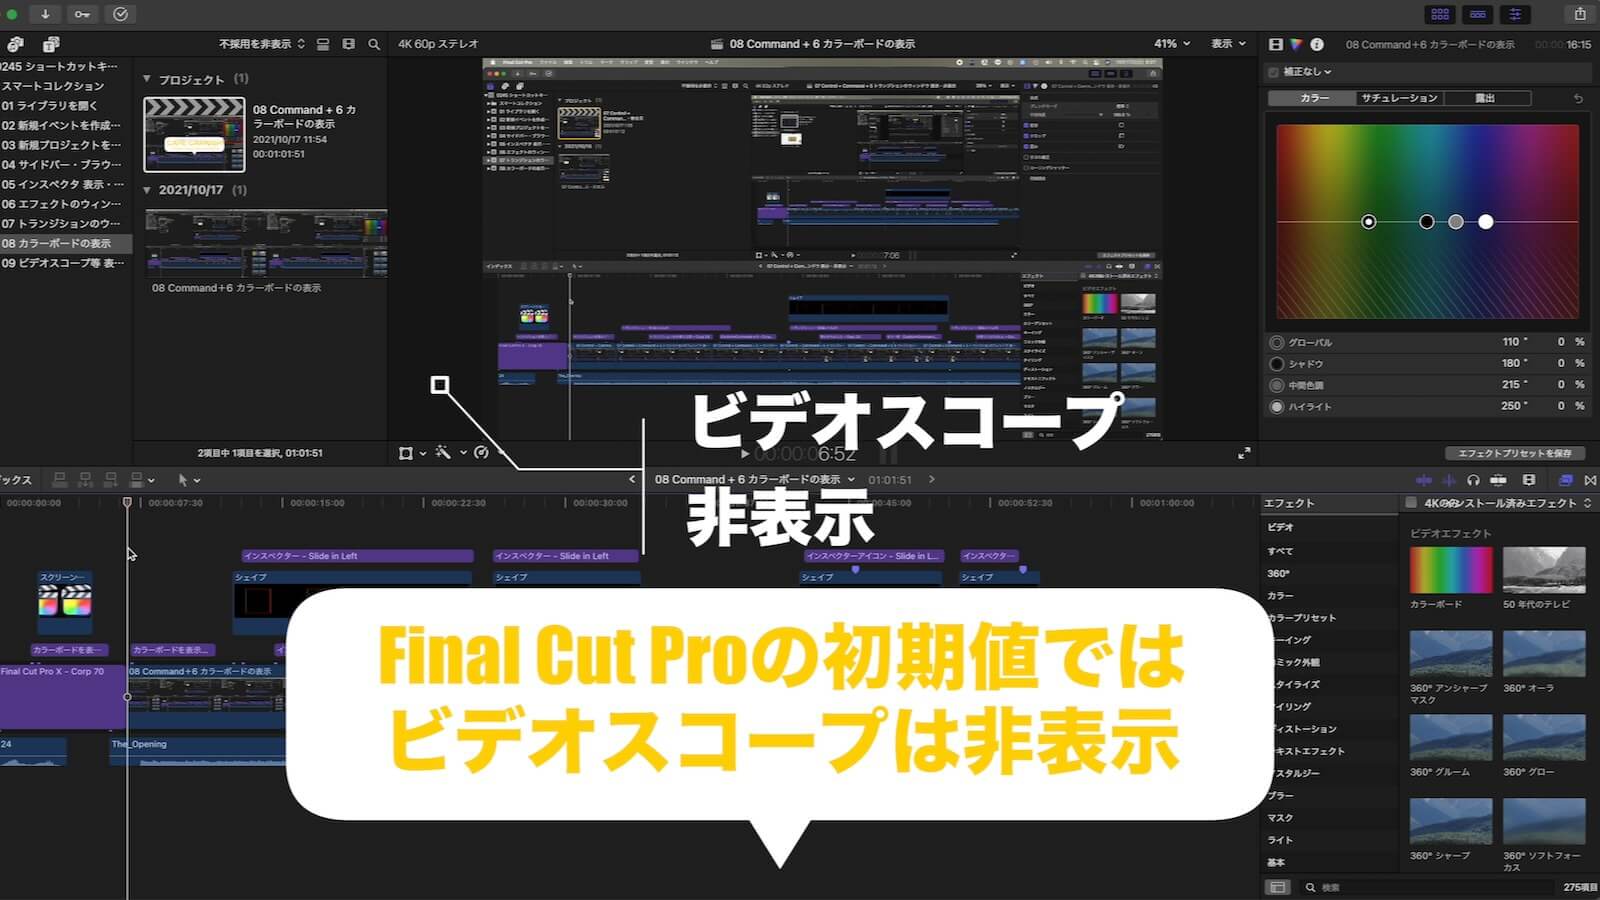 Final Cut Pro videoscope hidden screen